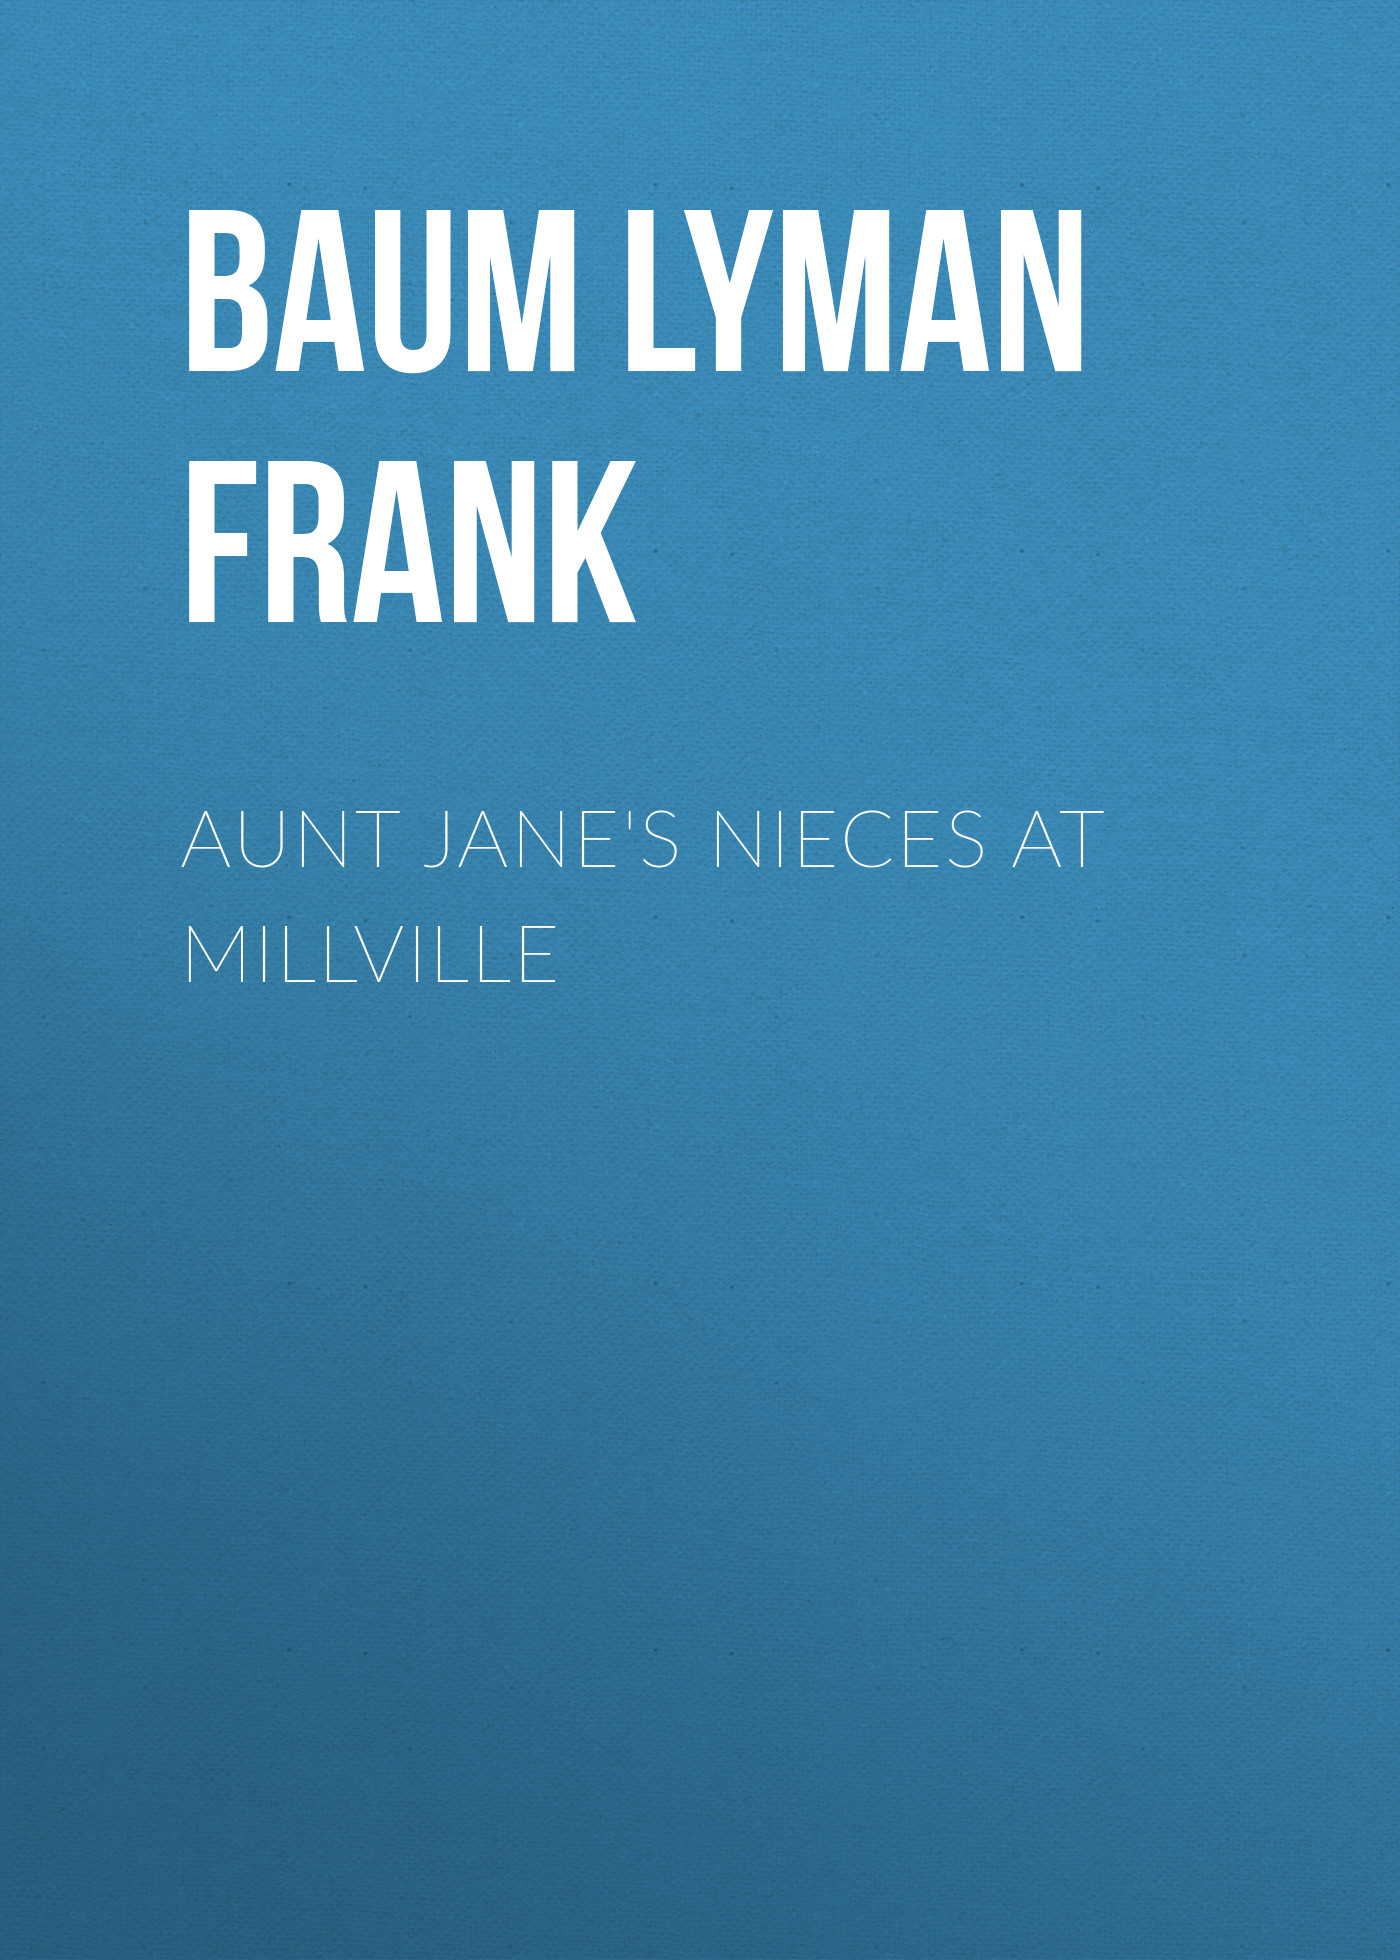 Книга Aunt Jane's Nieces at Millville из серии , созданная Lyman Baum, может относится к жанру Зарубежная старинная литература, Зарубежная классика. Стоимость электронной книги Aunt Jane's Nieces at Millville с идентификатором 25019355 составляет 0 руб.